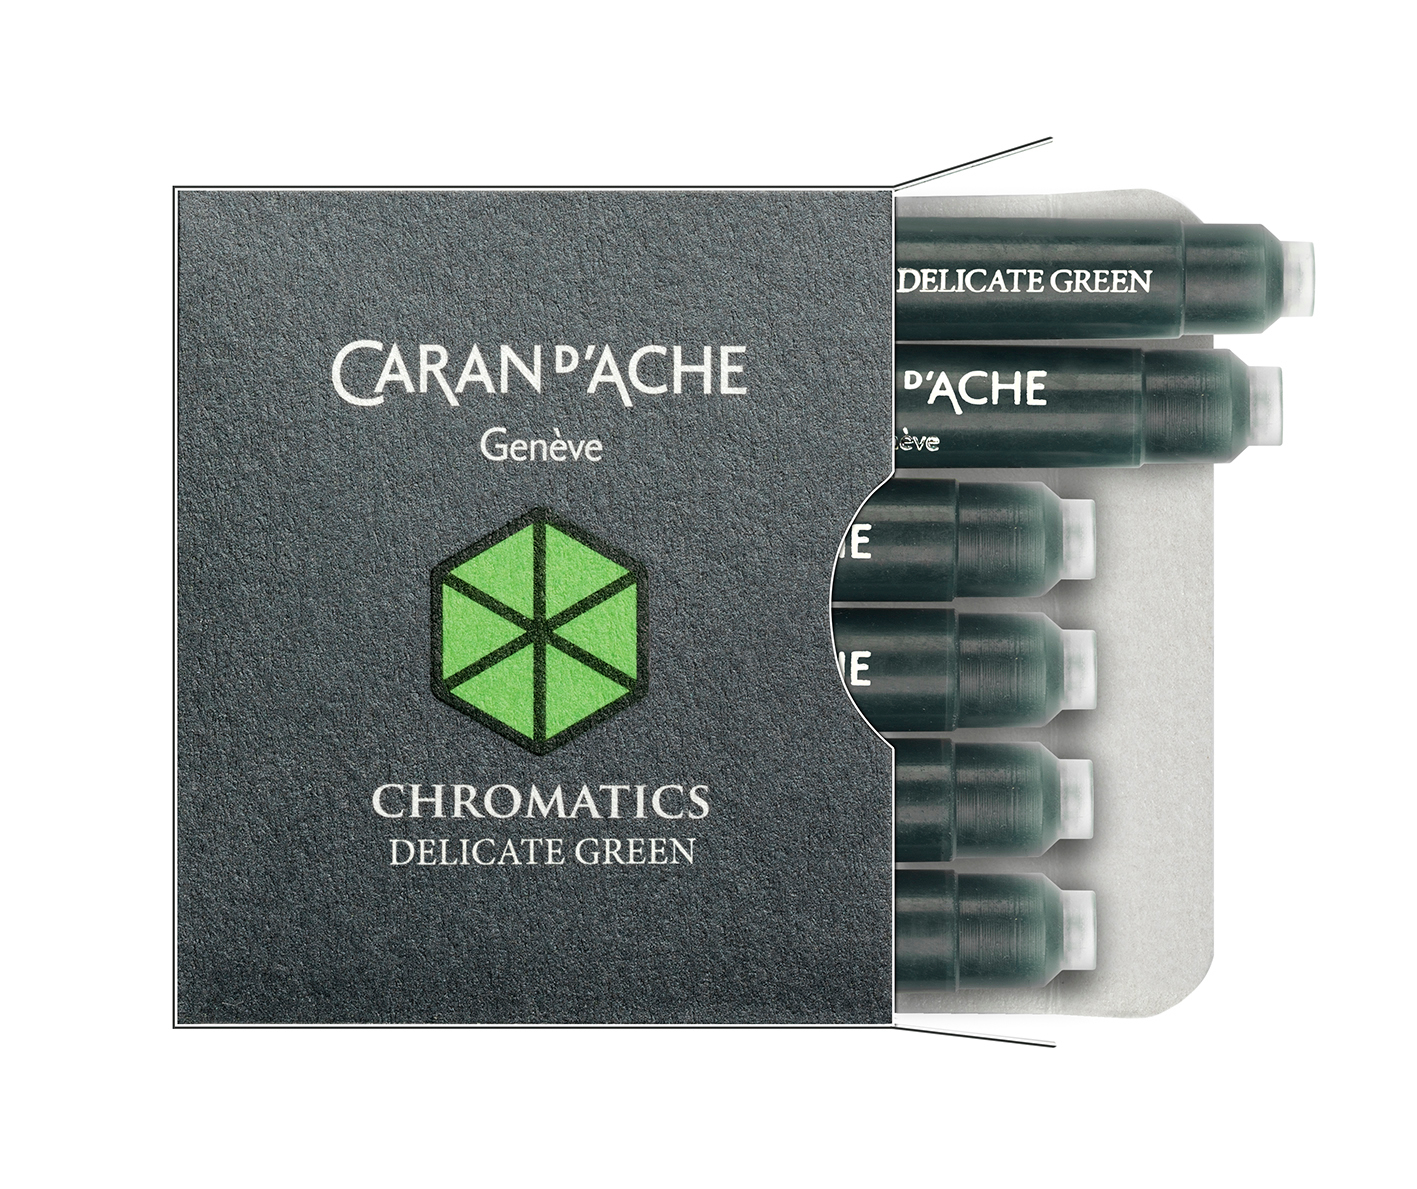 CARAN D'ACHE Cartouche d'encre 8021.221 Delicate Green 6 pcs.